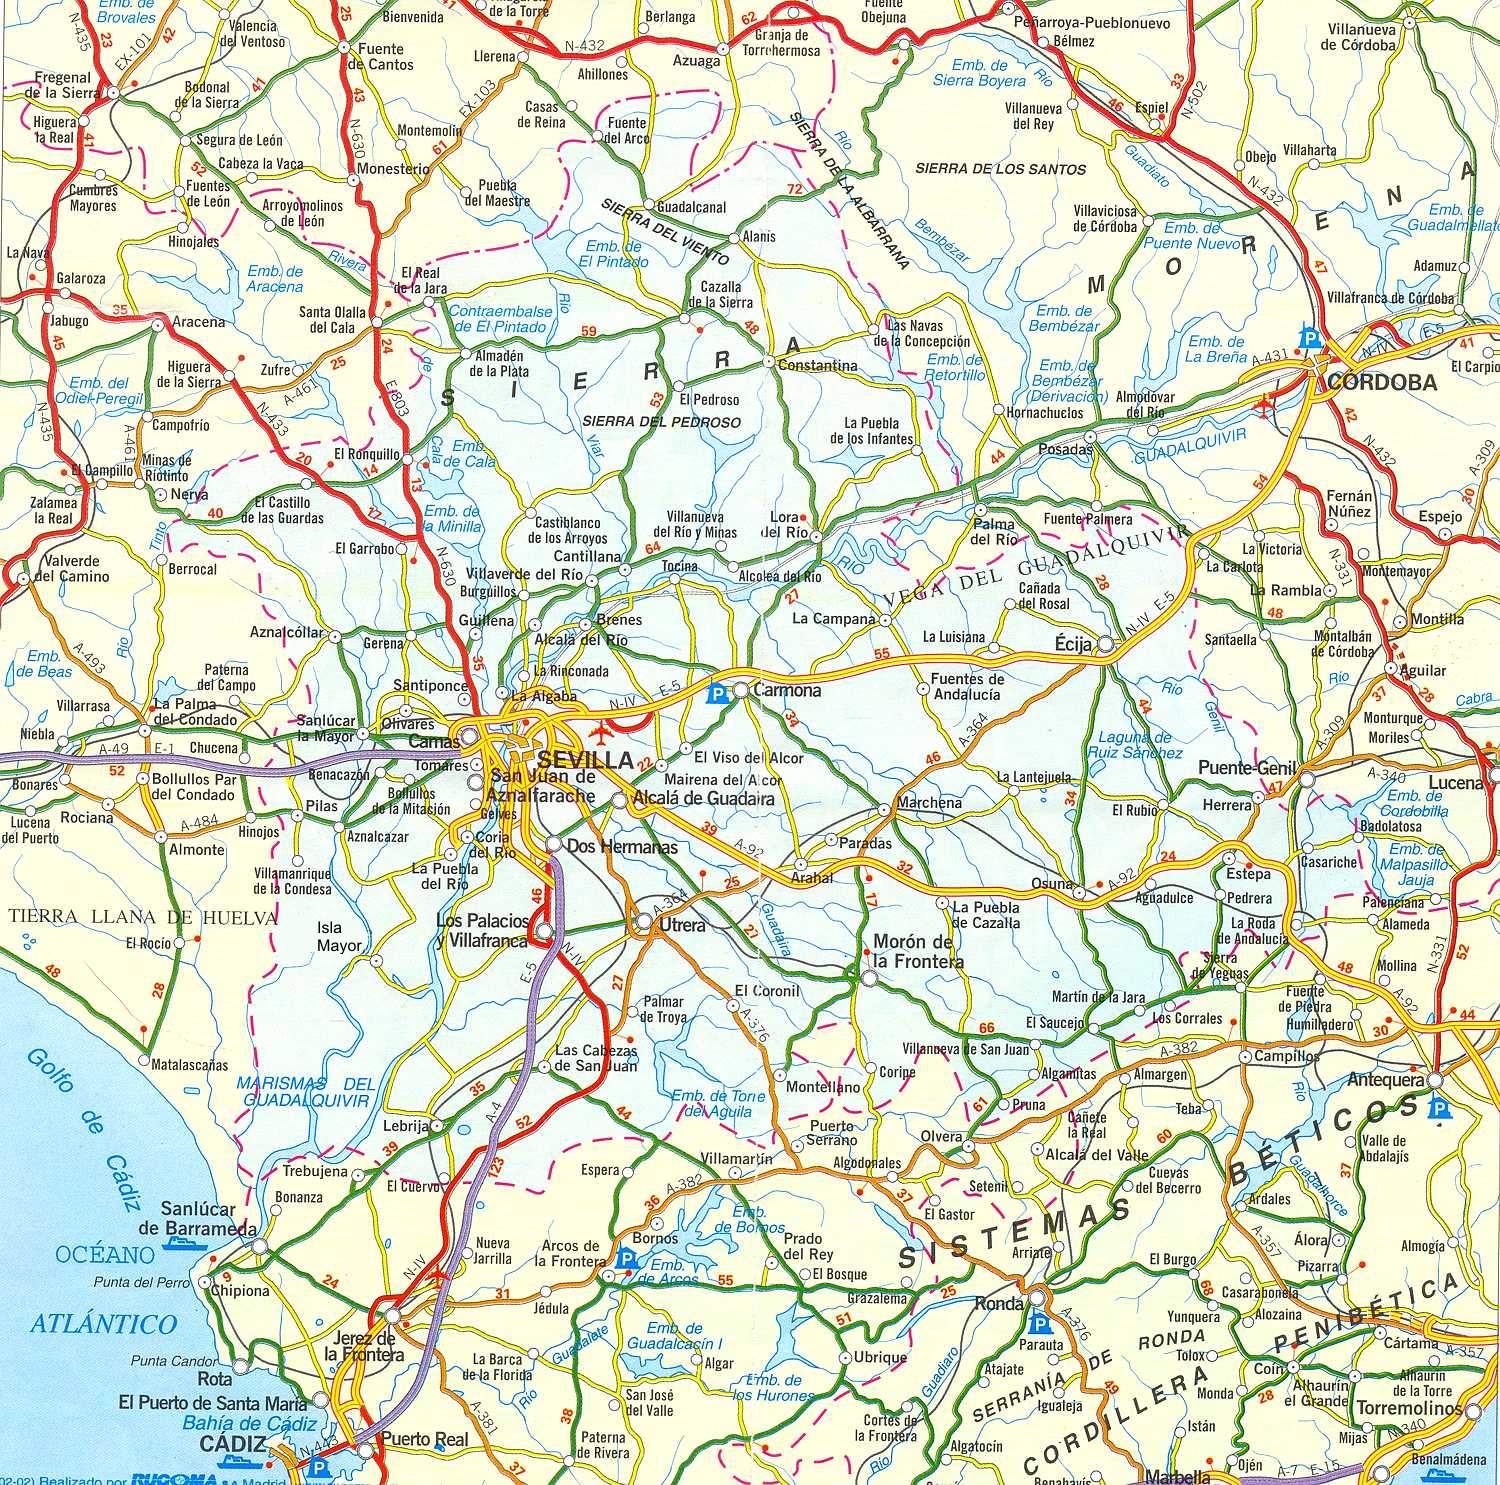 seville-carte-geographique